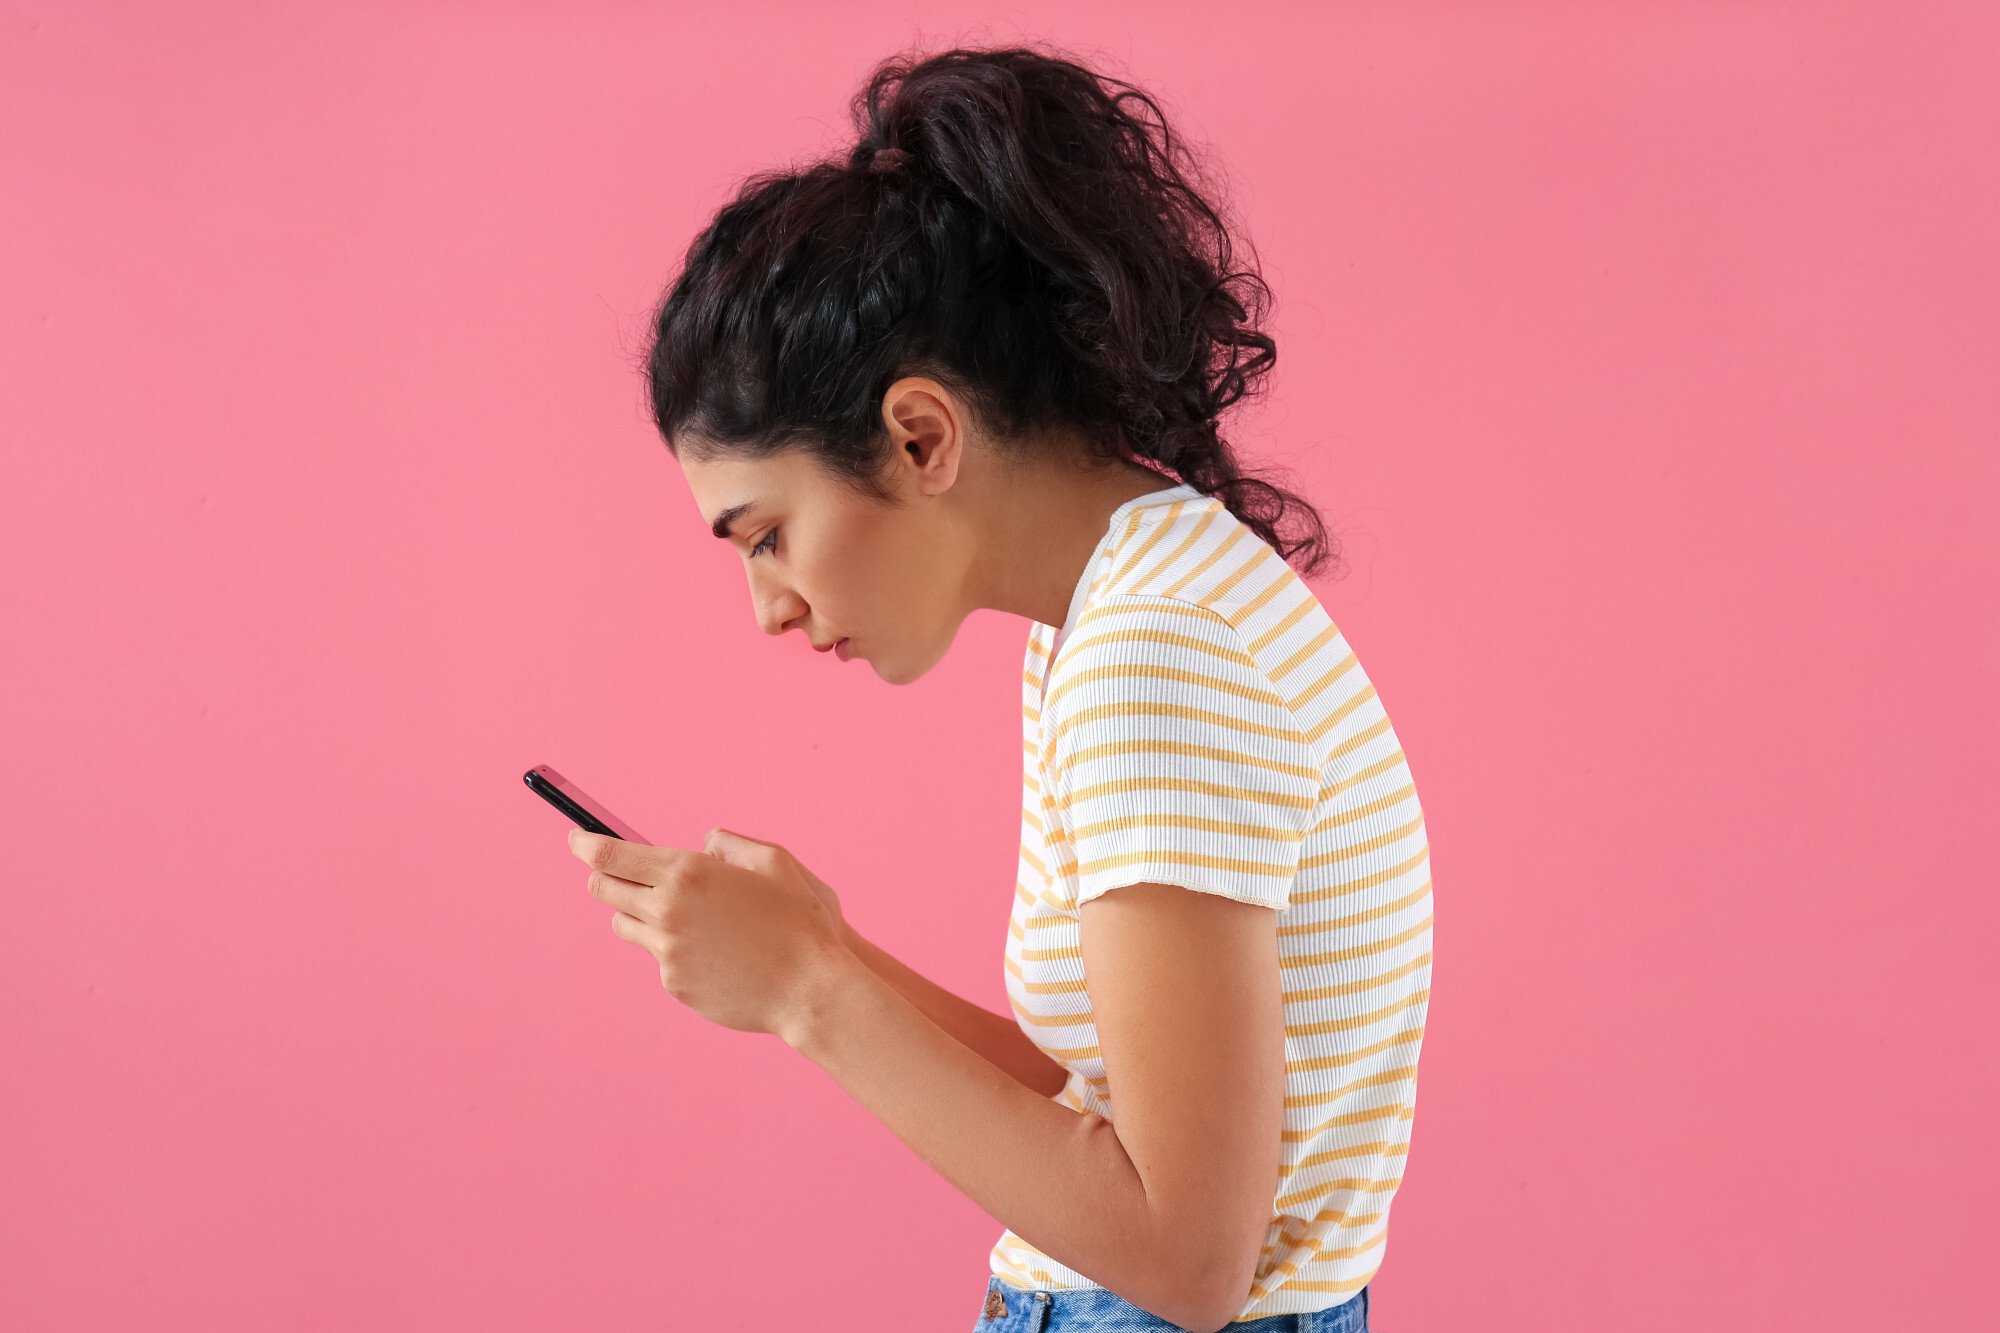 Jovem mulher de cabelos pretos encaracolados mexe no celular enquanto apresenta coluna curvada